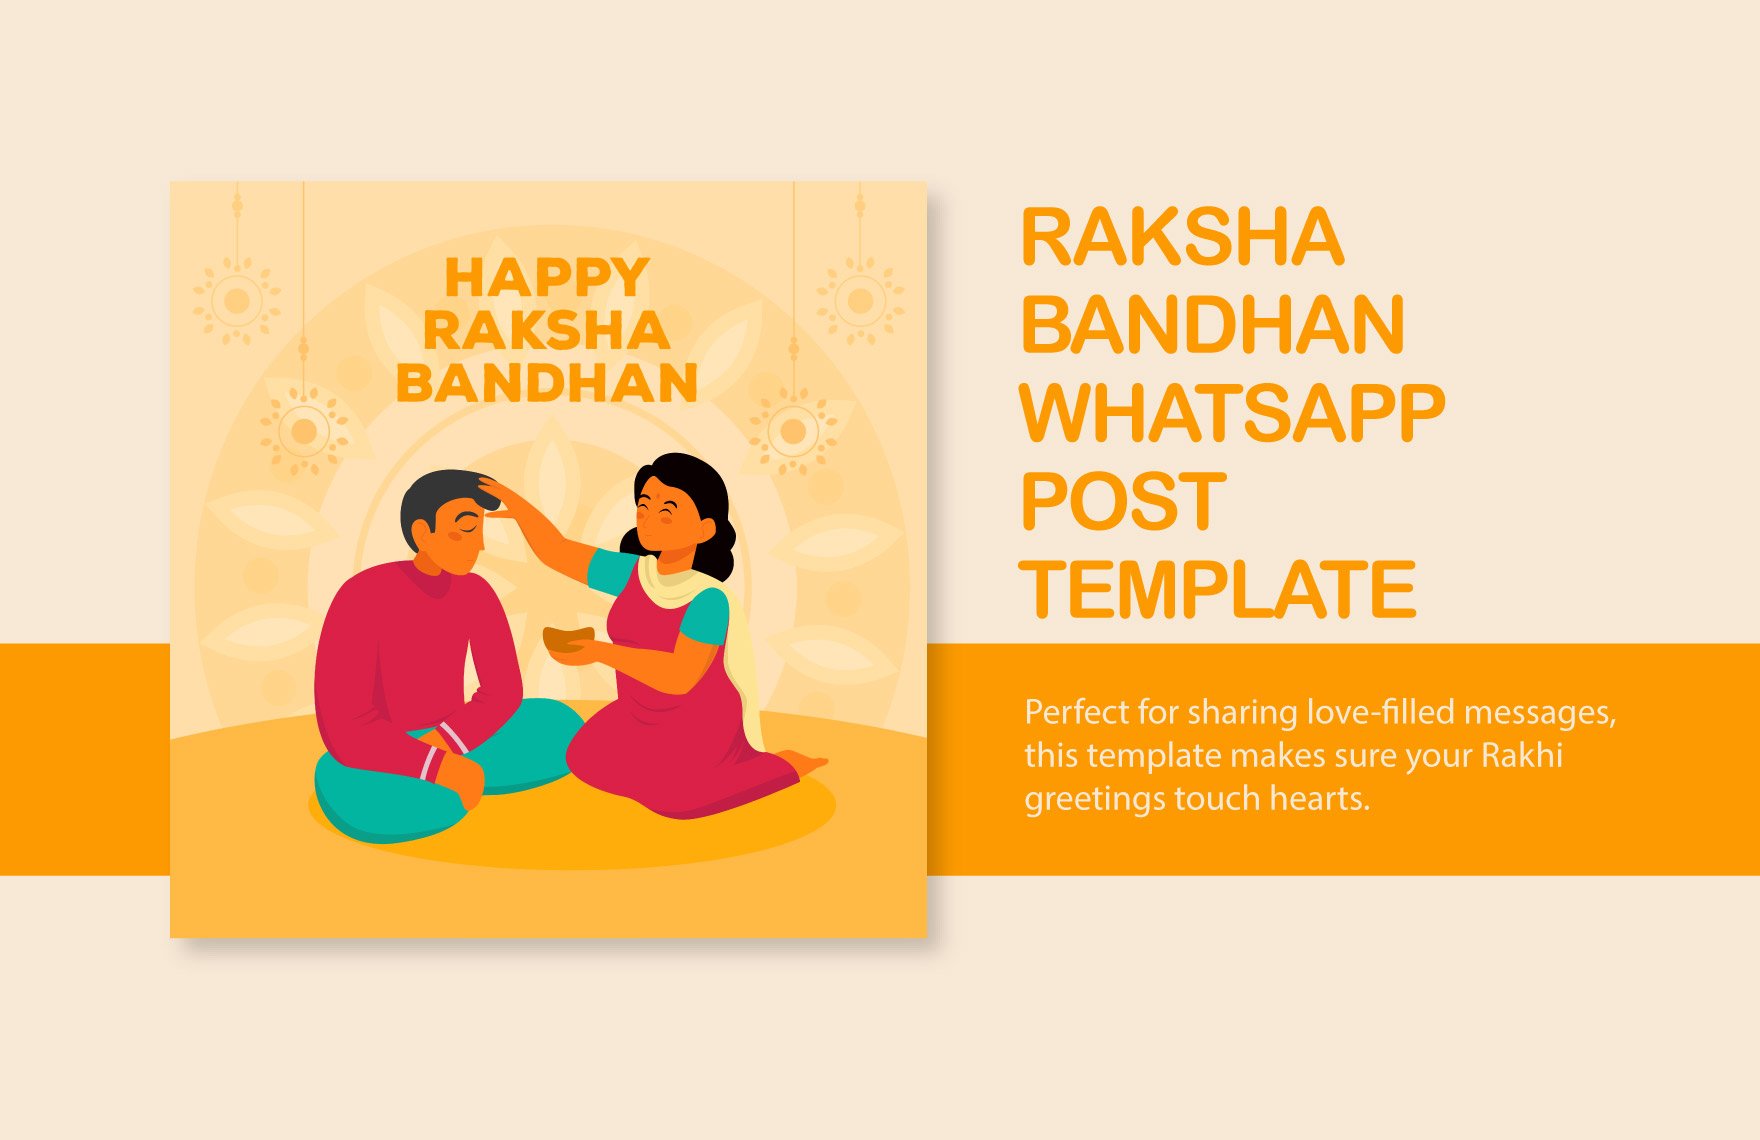 Free Raksha Bandhan WhatsApp Post Template in Illustrator, PSD, PNG